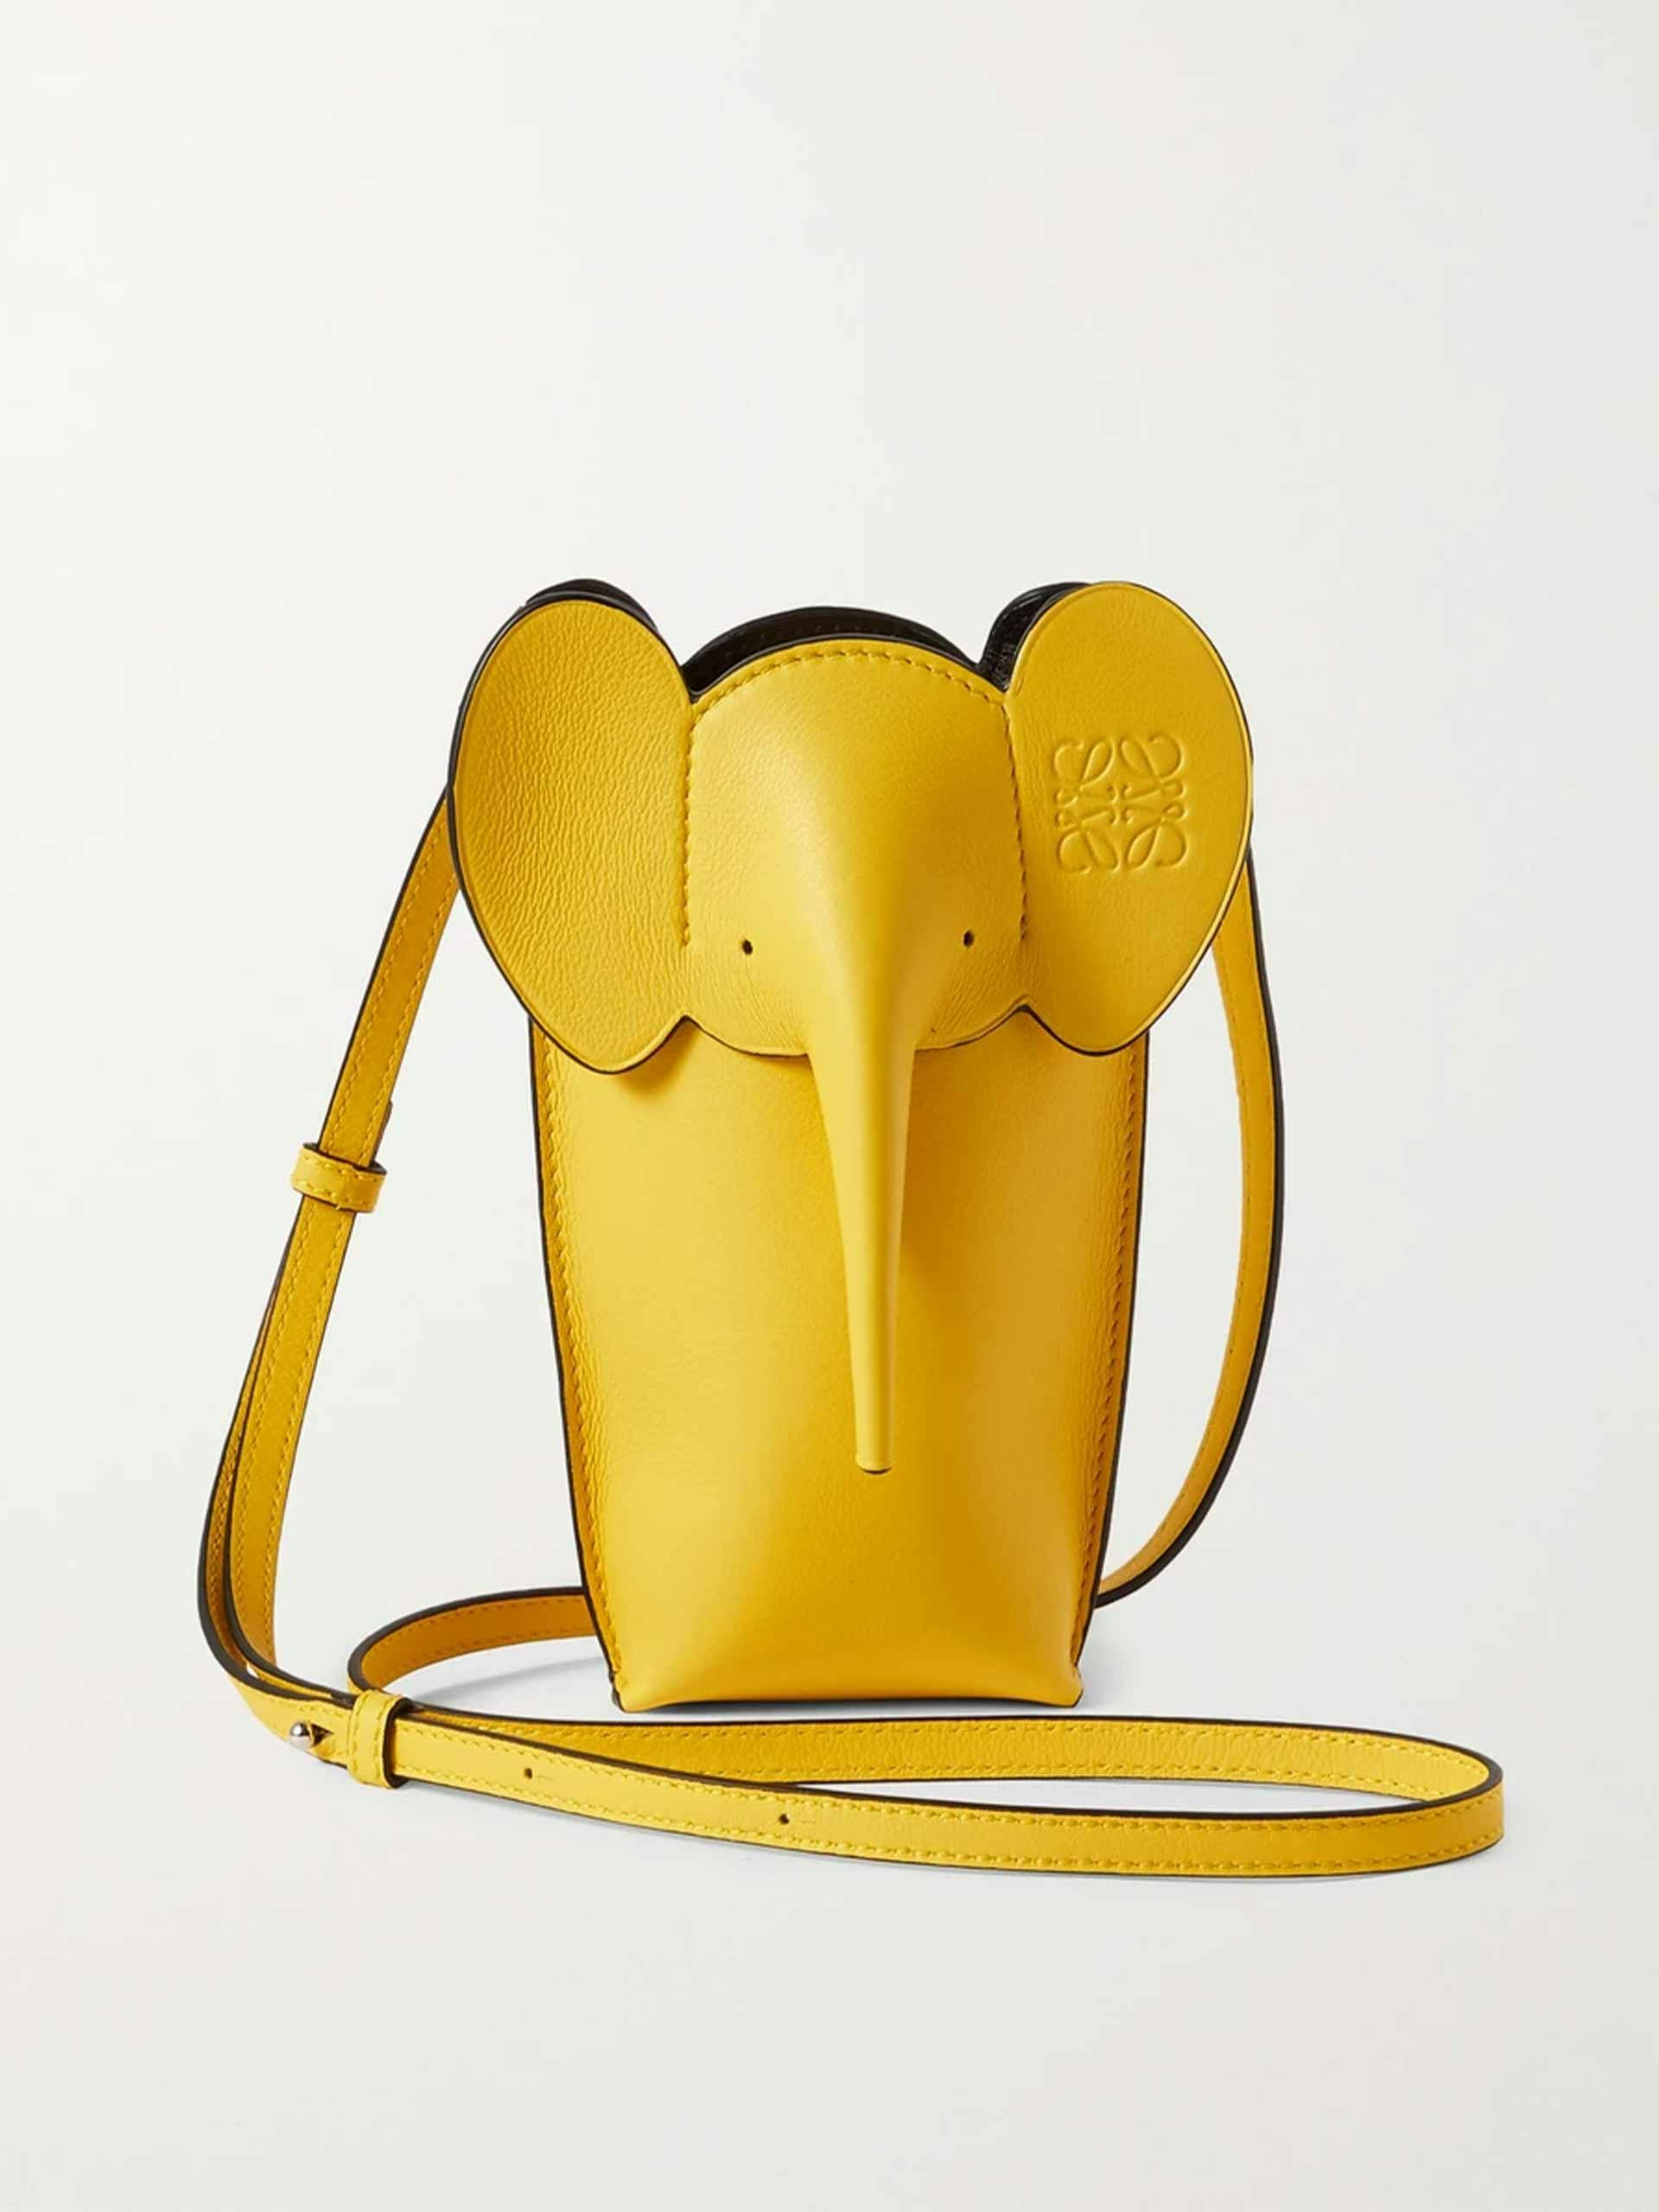 Elephant  textured leather shoulder bag